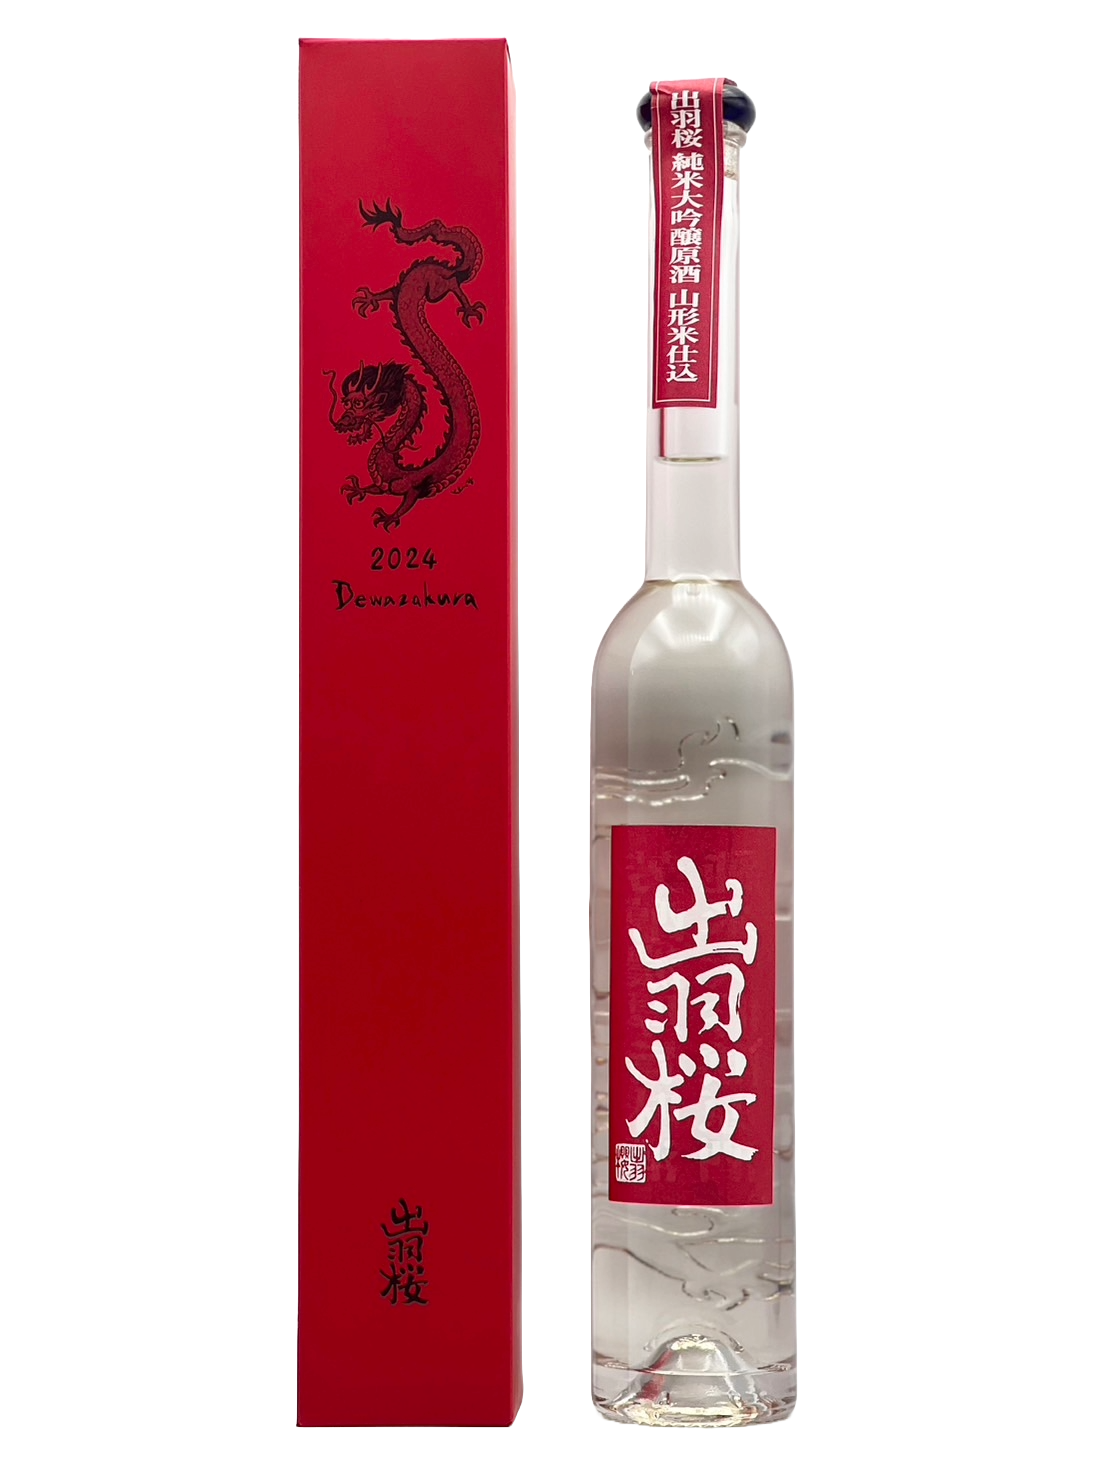 出羽桜 干支ボトル 純米大吟醸原酒 辰(たつ) 2024